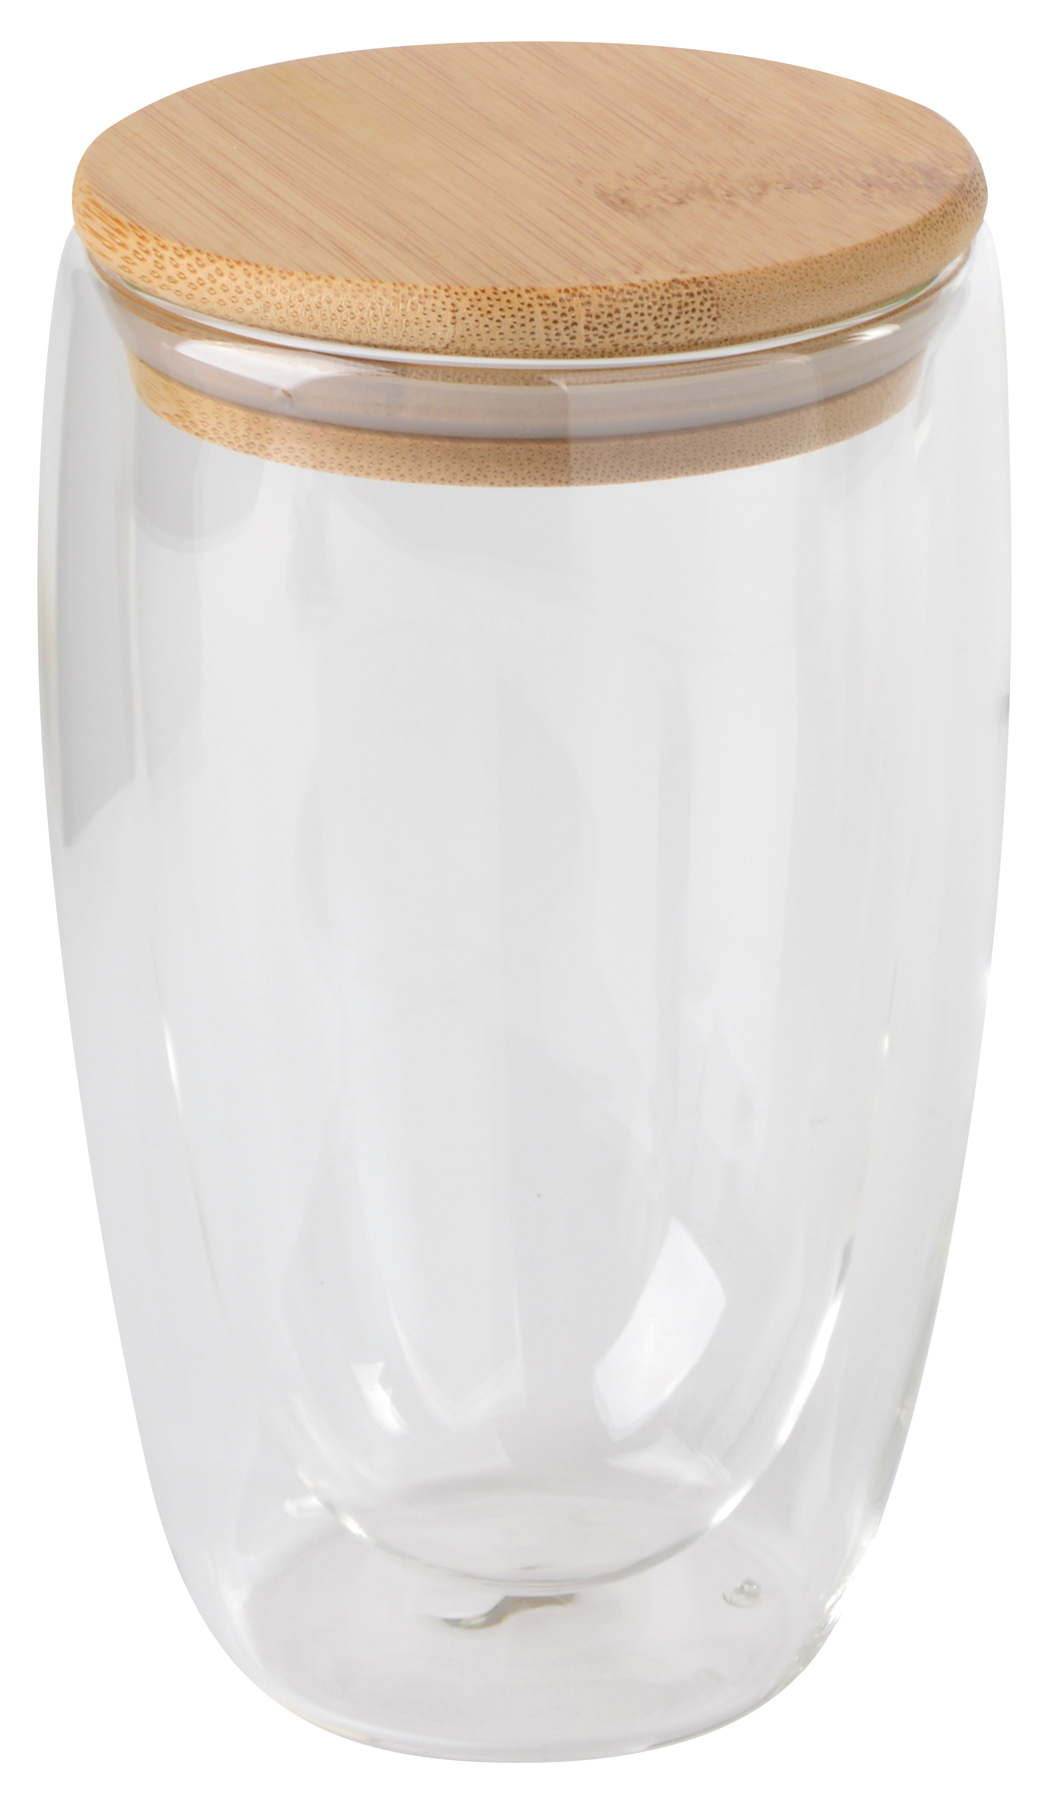 Dvouplášťová sklenice BAMBOO ART L  s víčkem z bambusu: průhledné, odolné vůči teplotě, kapacita cca. 450 ml - hnedá